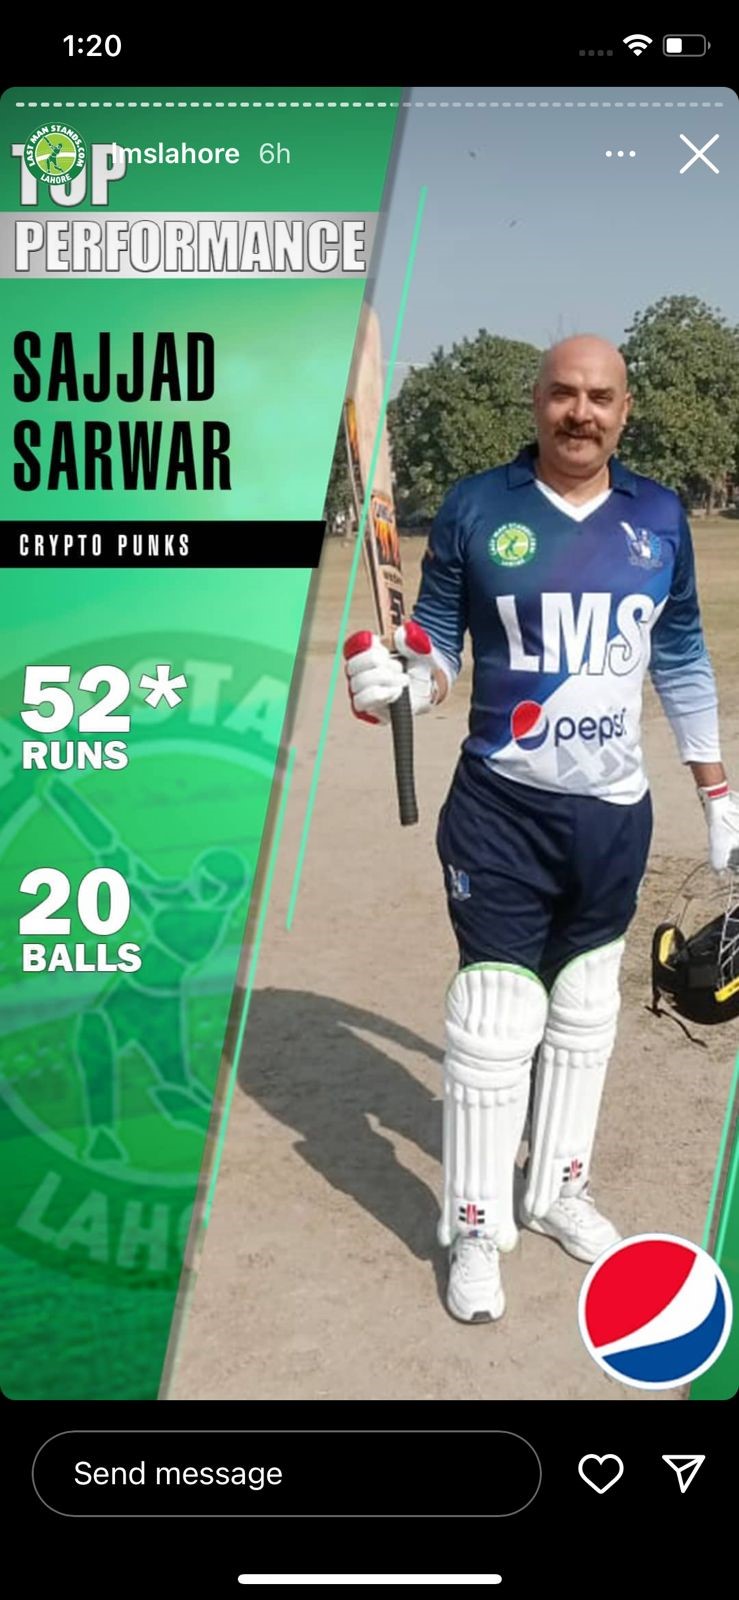 Sajjad Sarwar